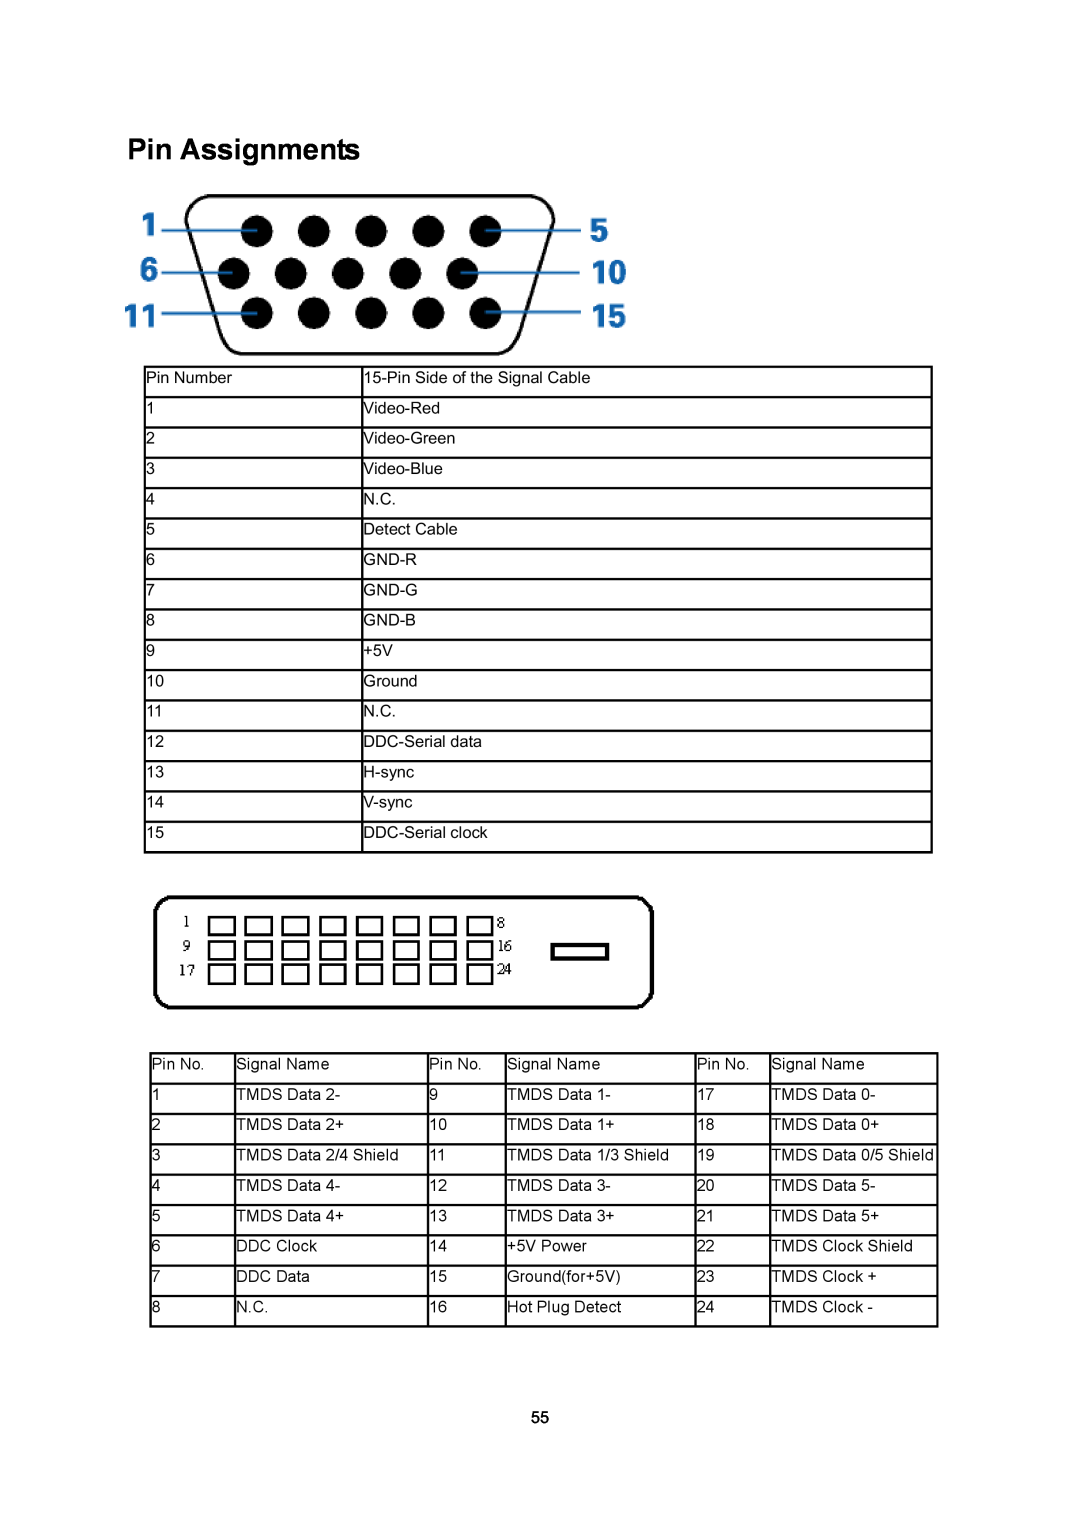 AOC E2795VH manual Pin Assignments, TMDS Data 0/5 Shield 